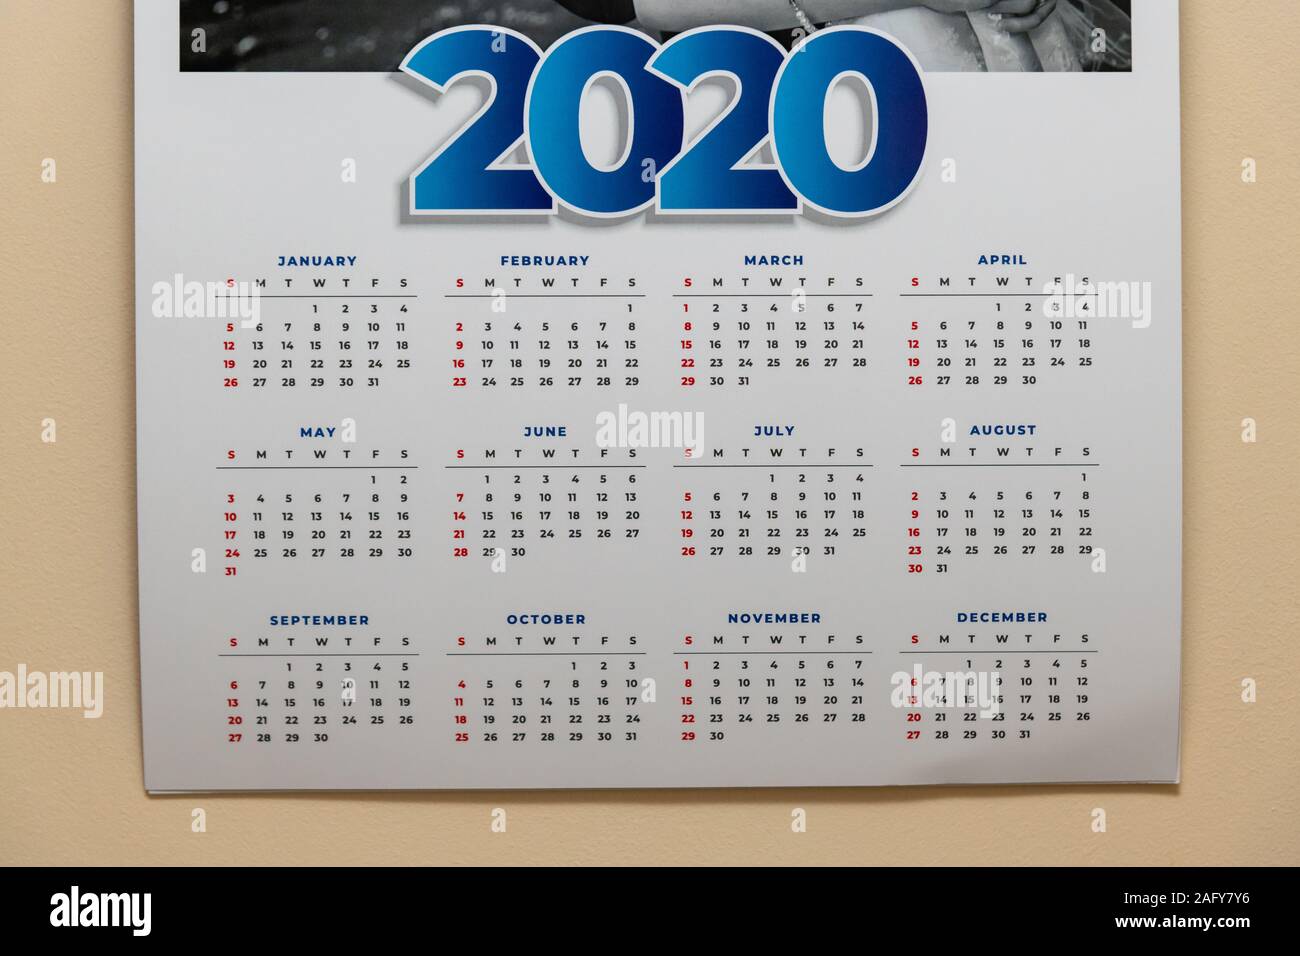 Calendrier 2020 accrochée à un mur crème Banque D'Images